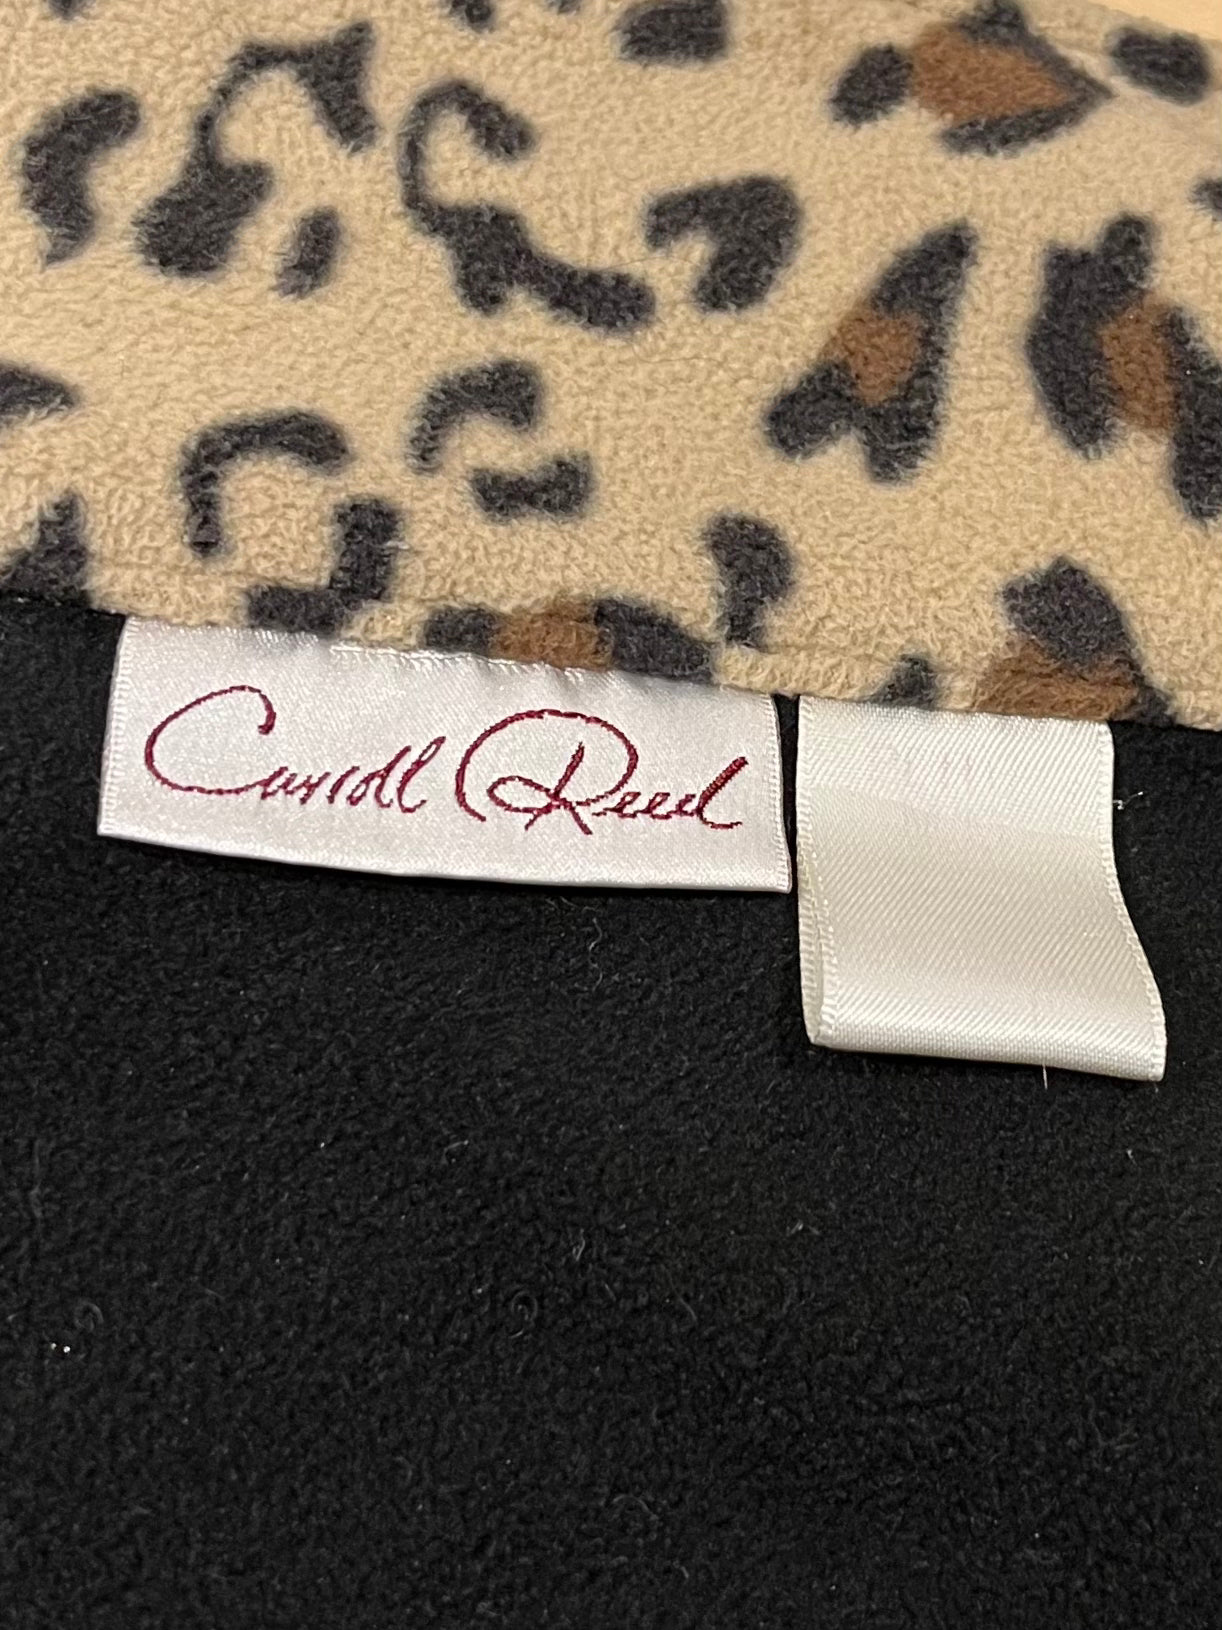 90s 'Carol Reed' Cheetah Print Fleece Jacket / Medium